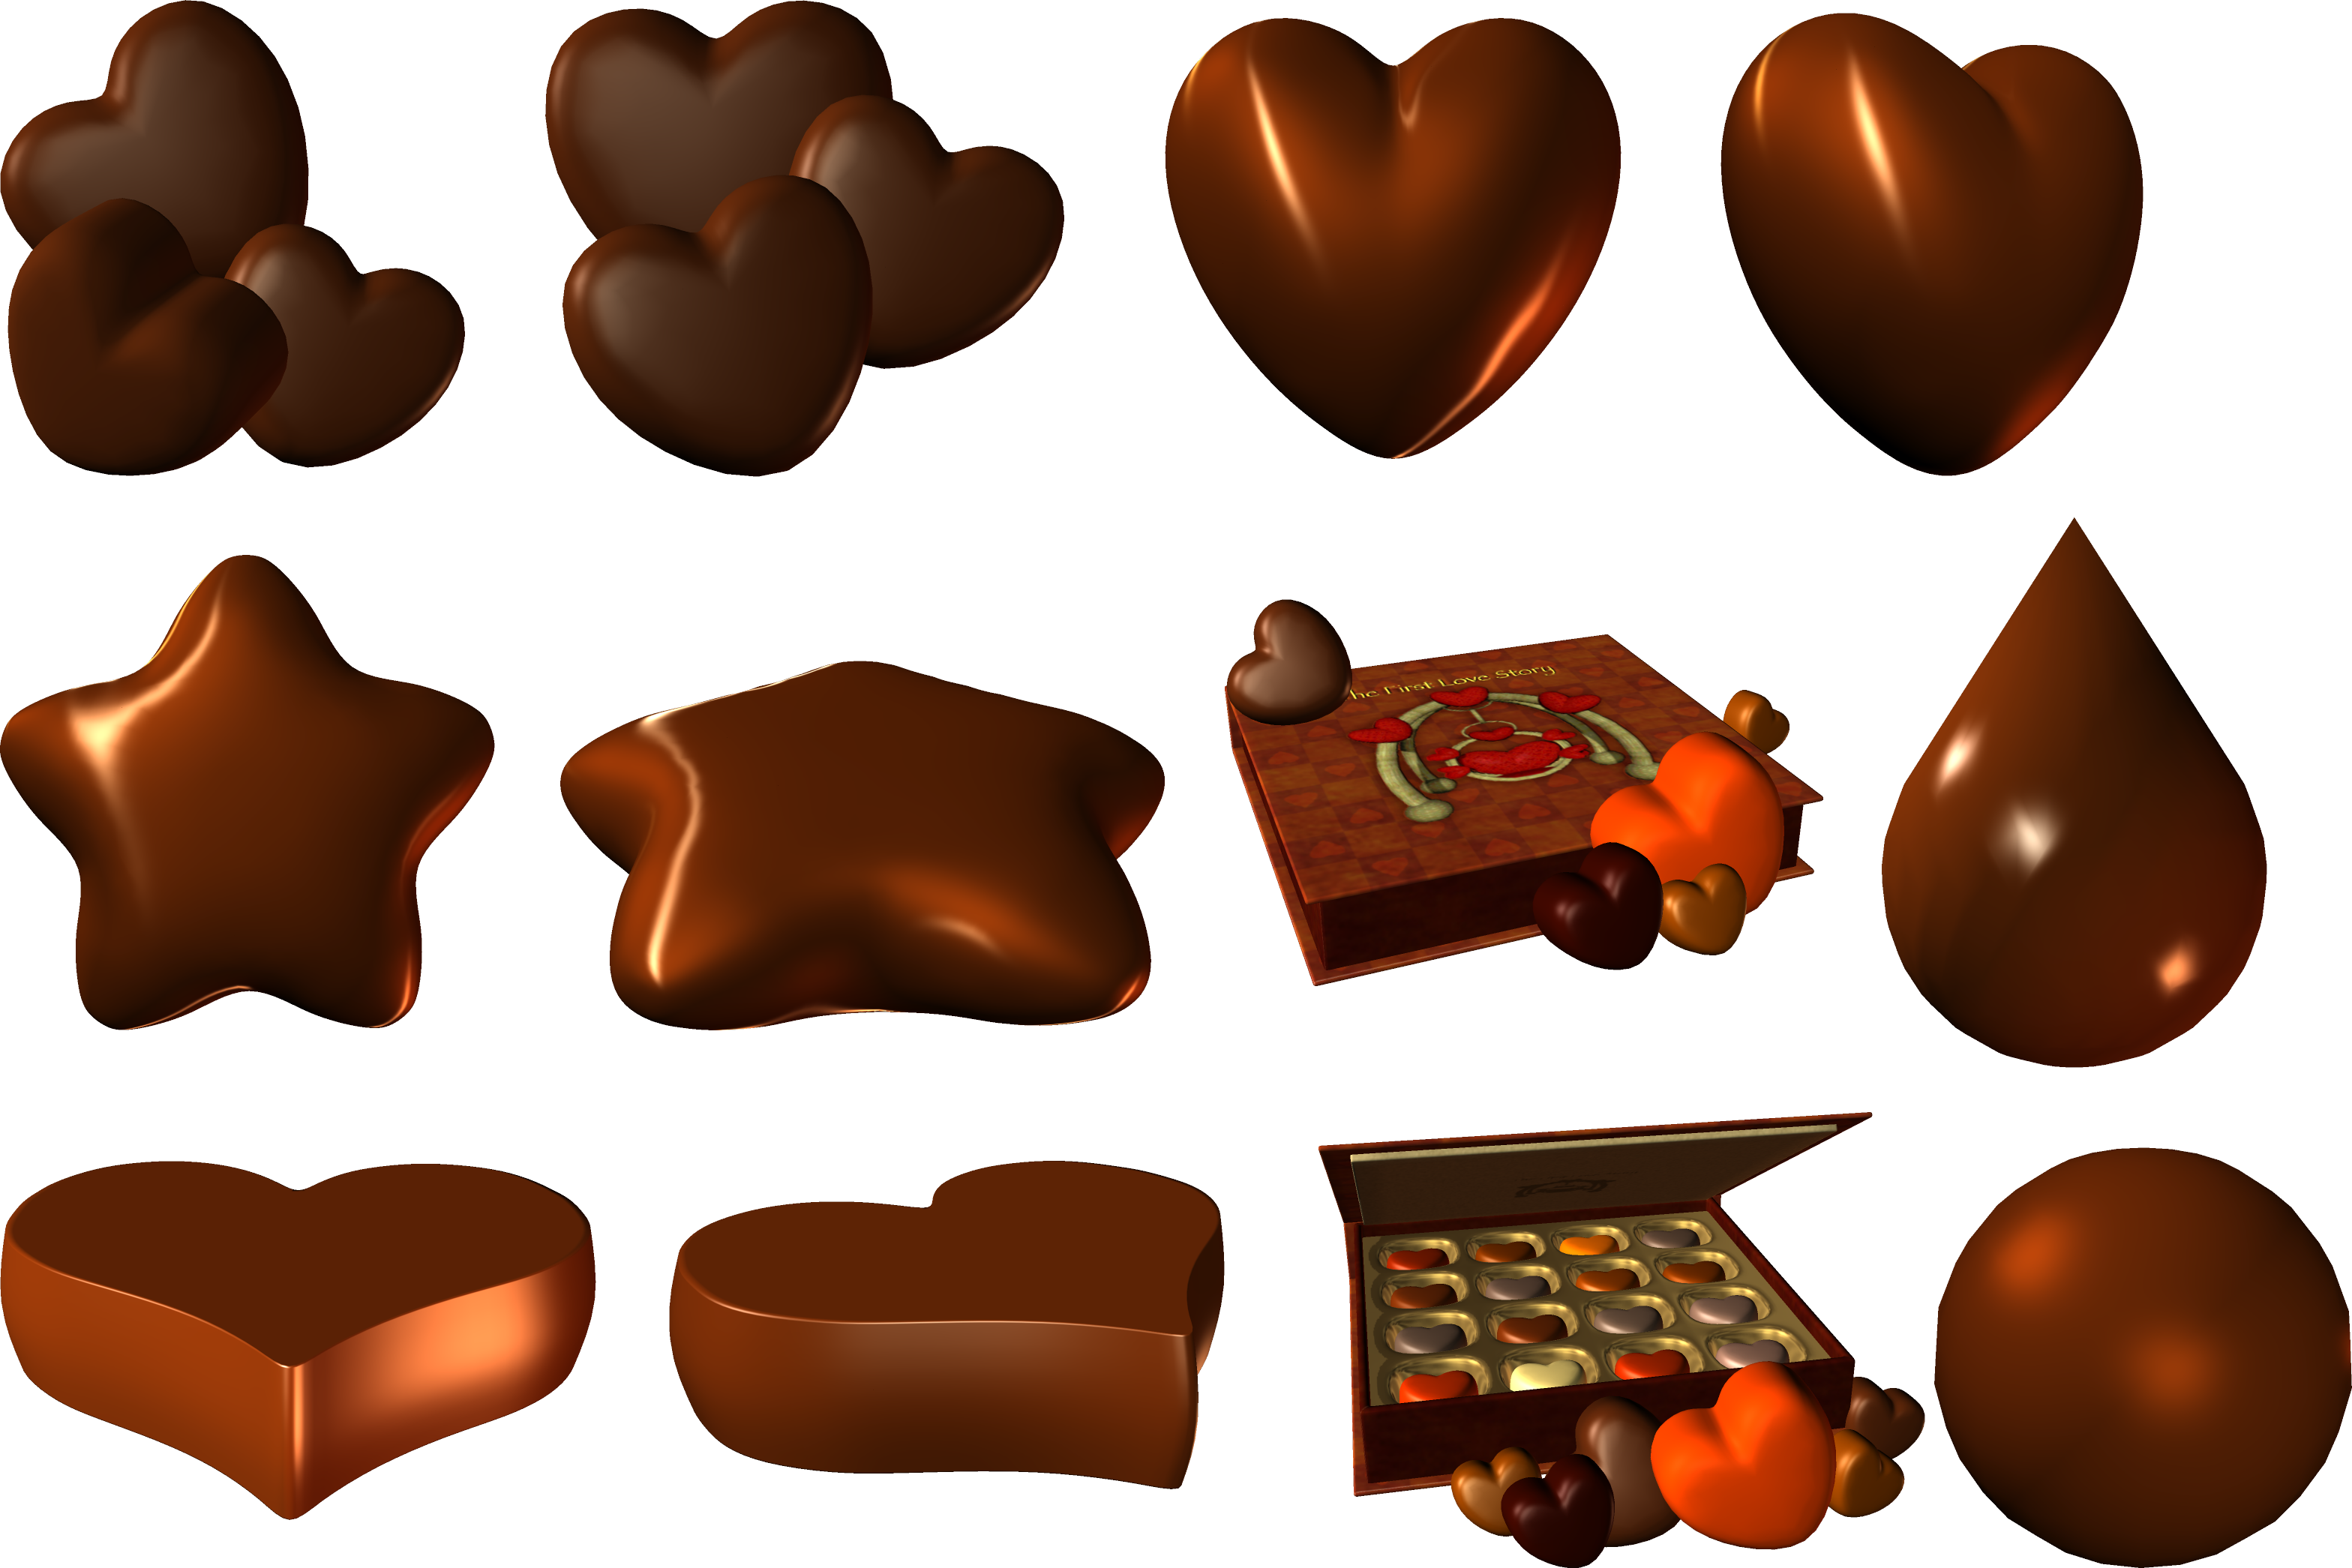 Cokelat